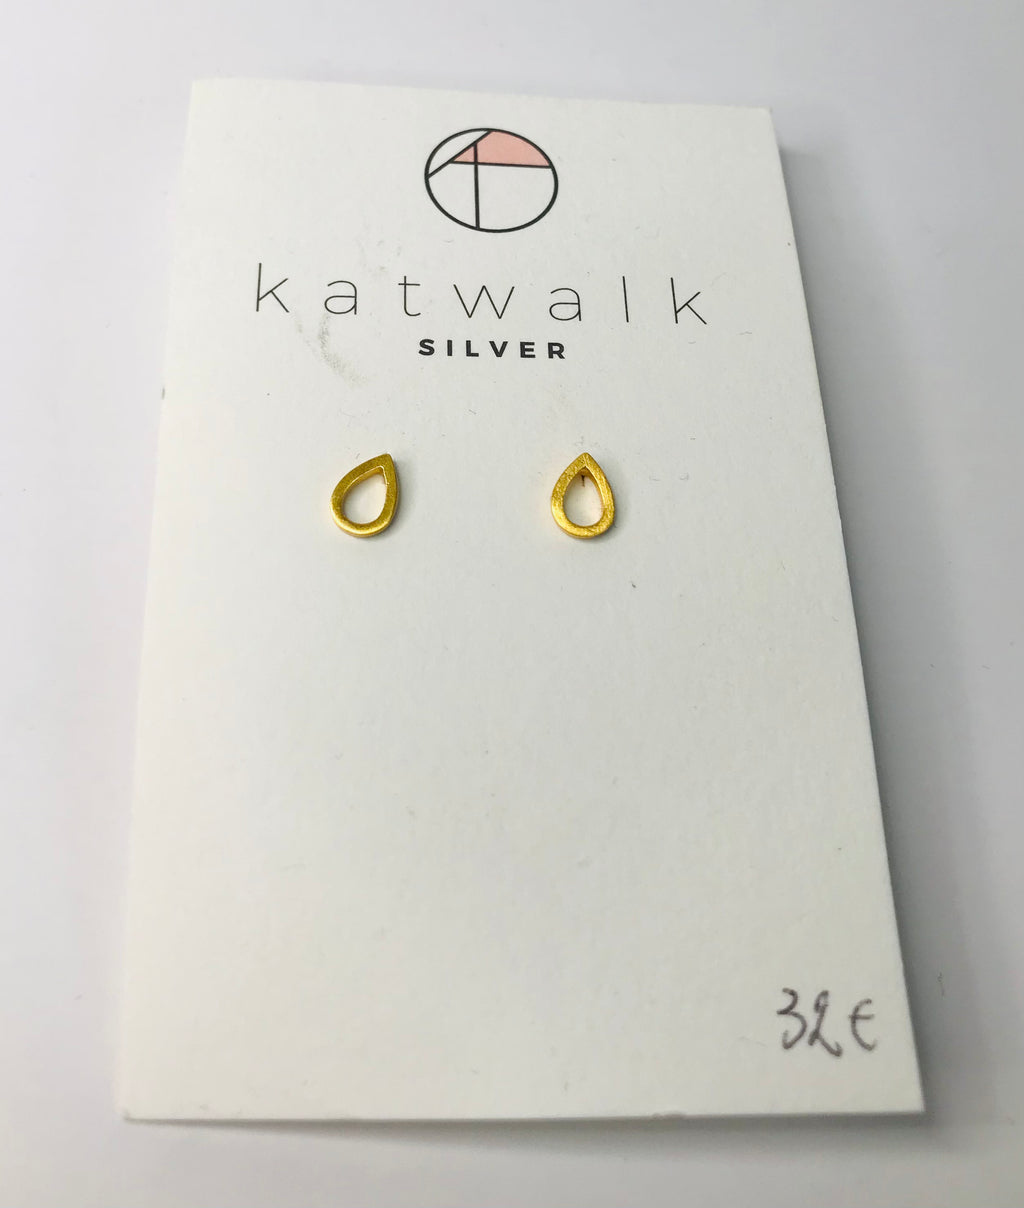 Katwalk silver - small earrings